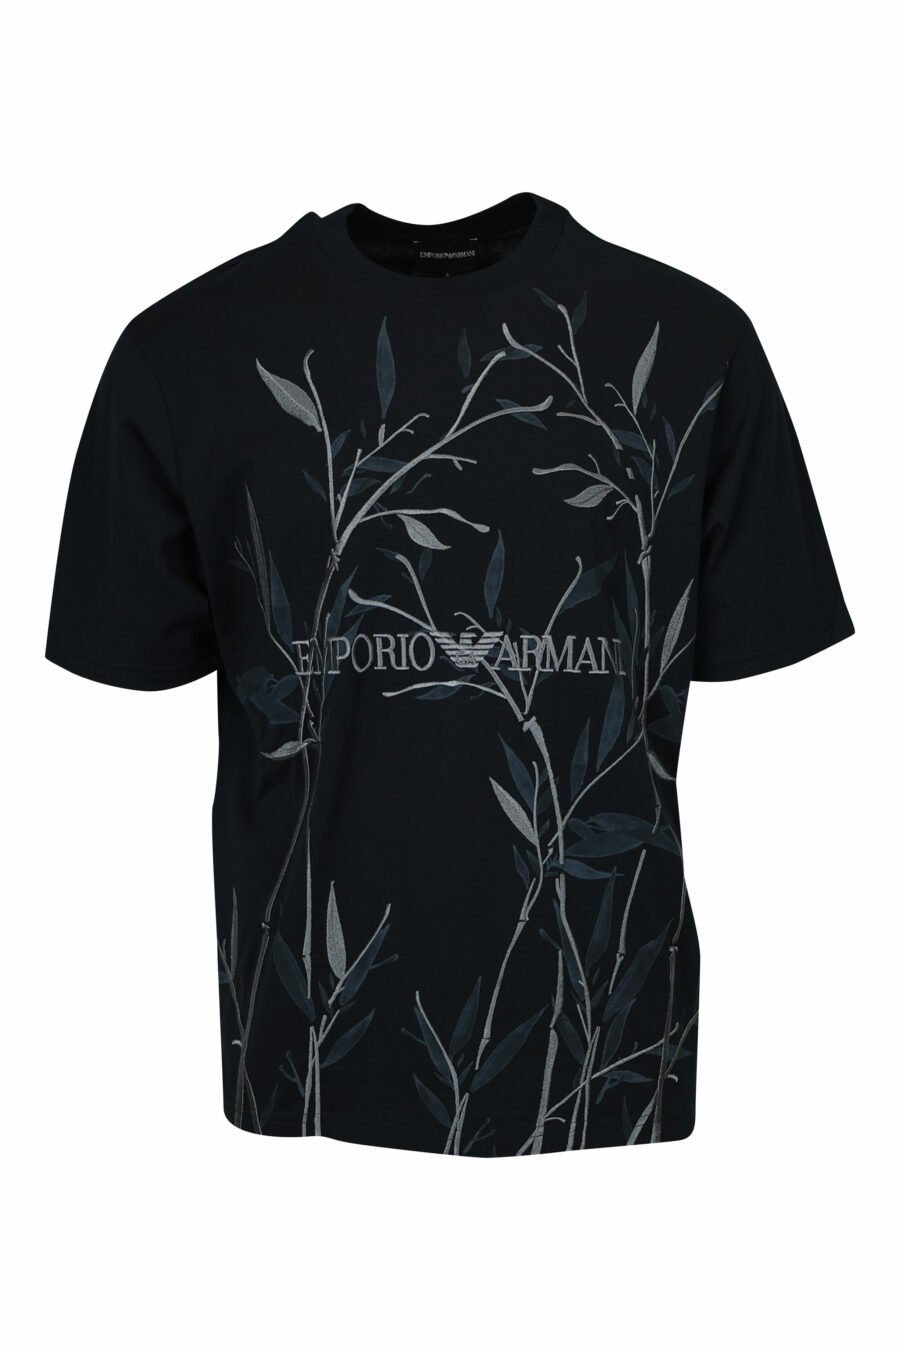 Schwarzes T-Shirt mit Blattdruck und Maxilogo "emporio" - 8058947296163